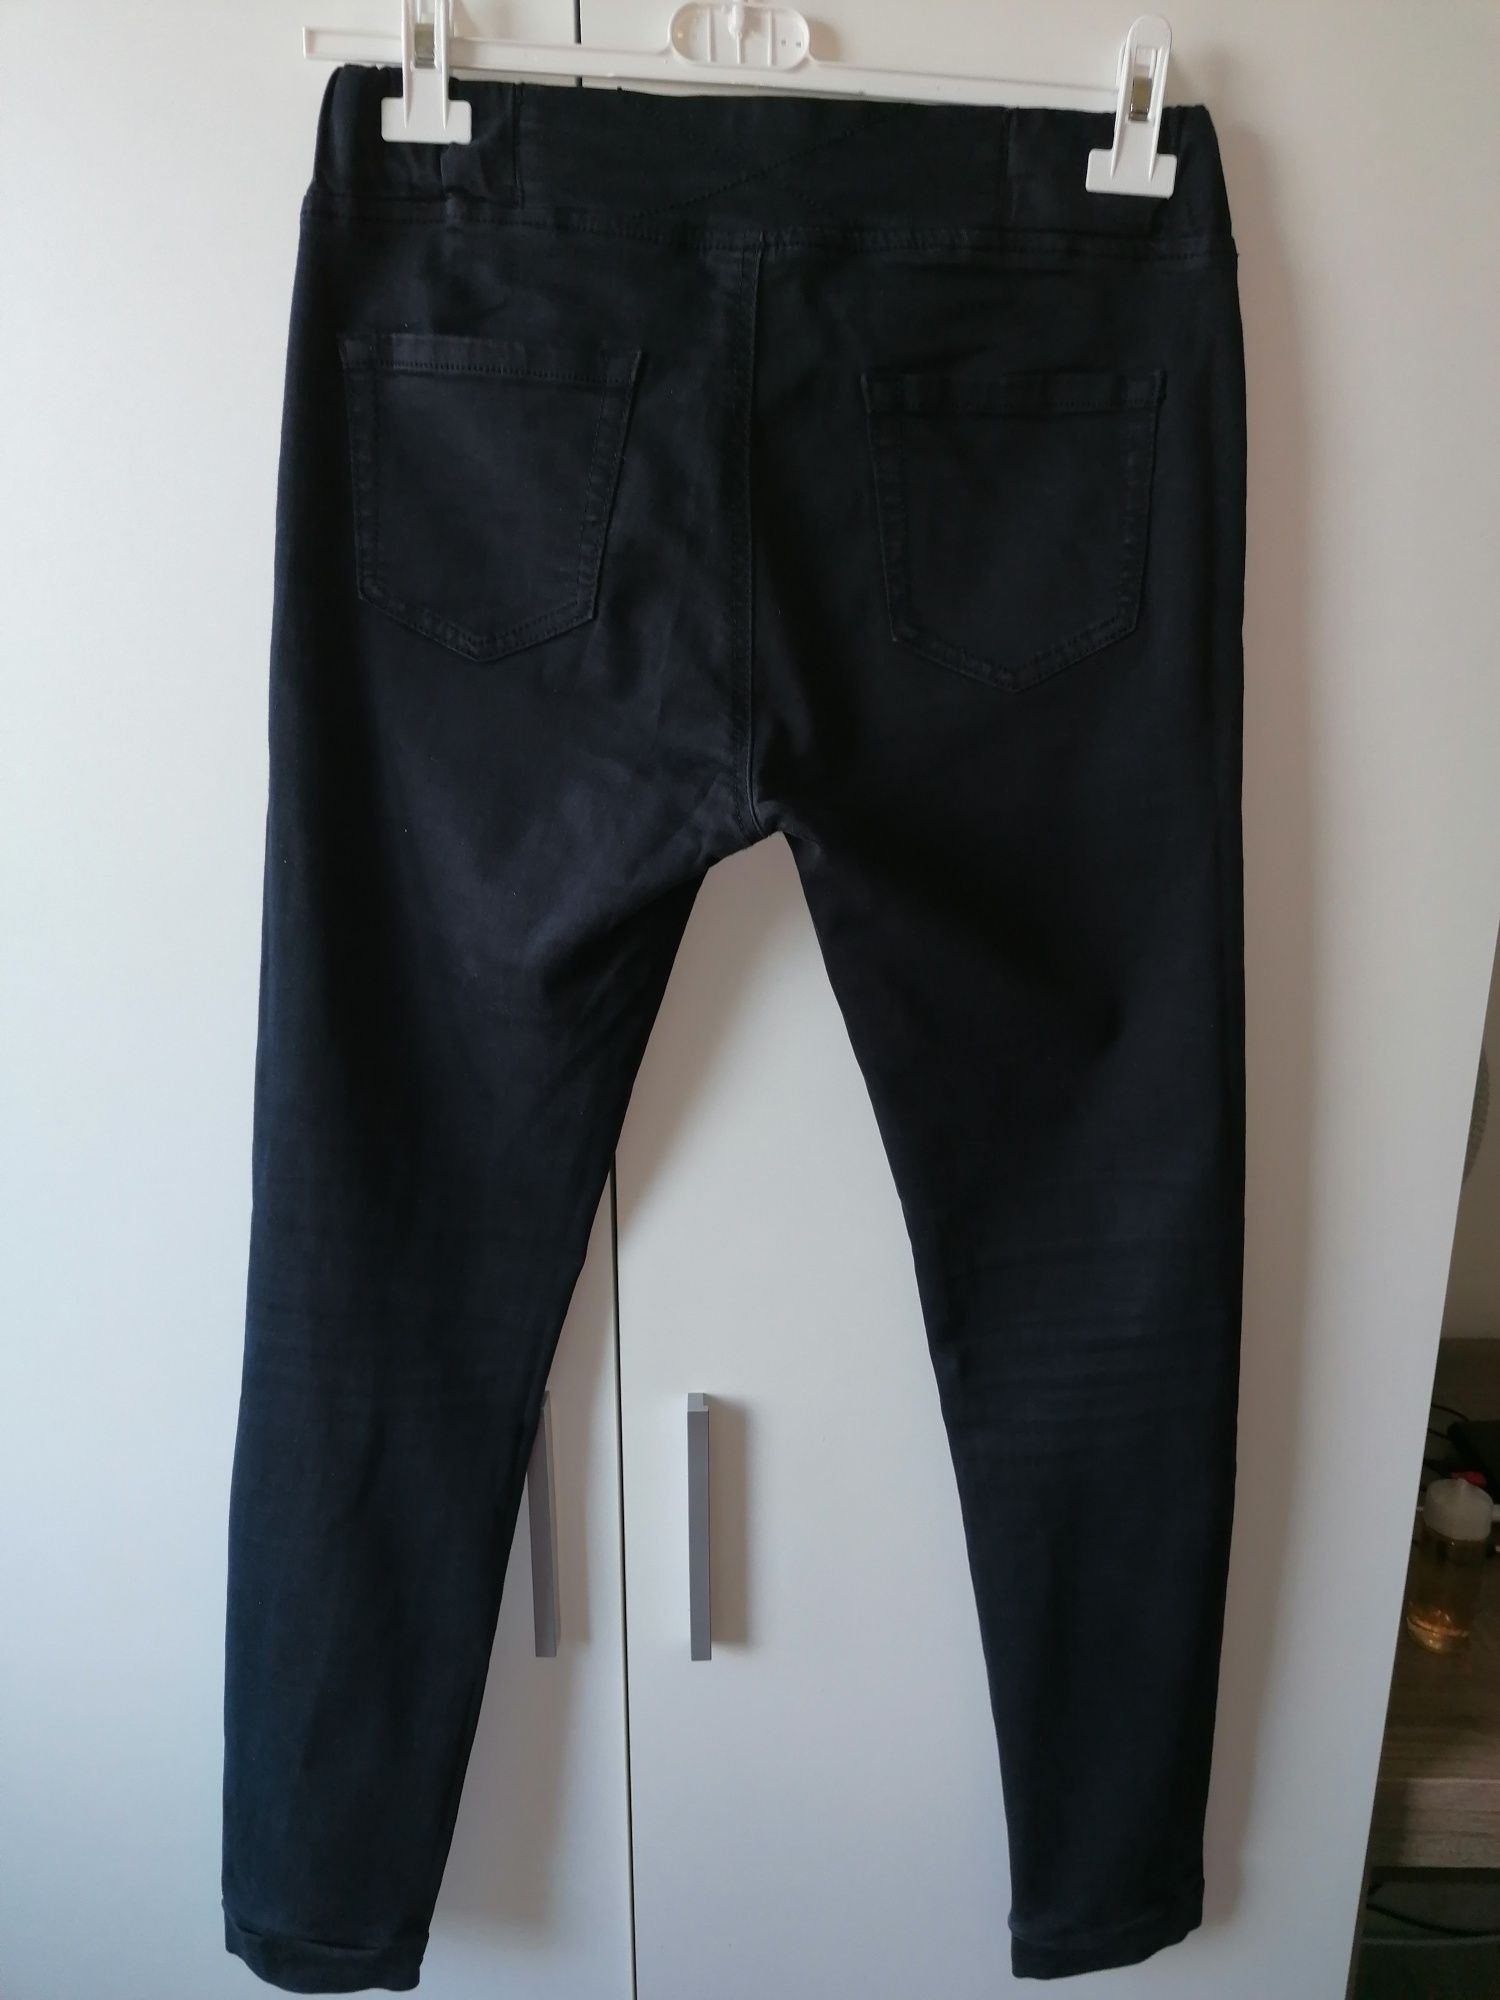 Spodnie jeansowe zawiązywane na sznurek, rozmiar L